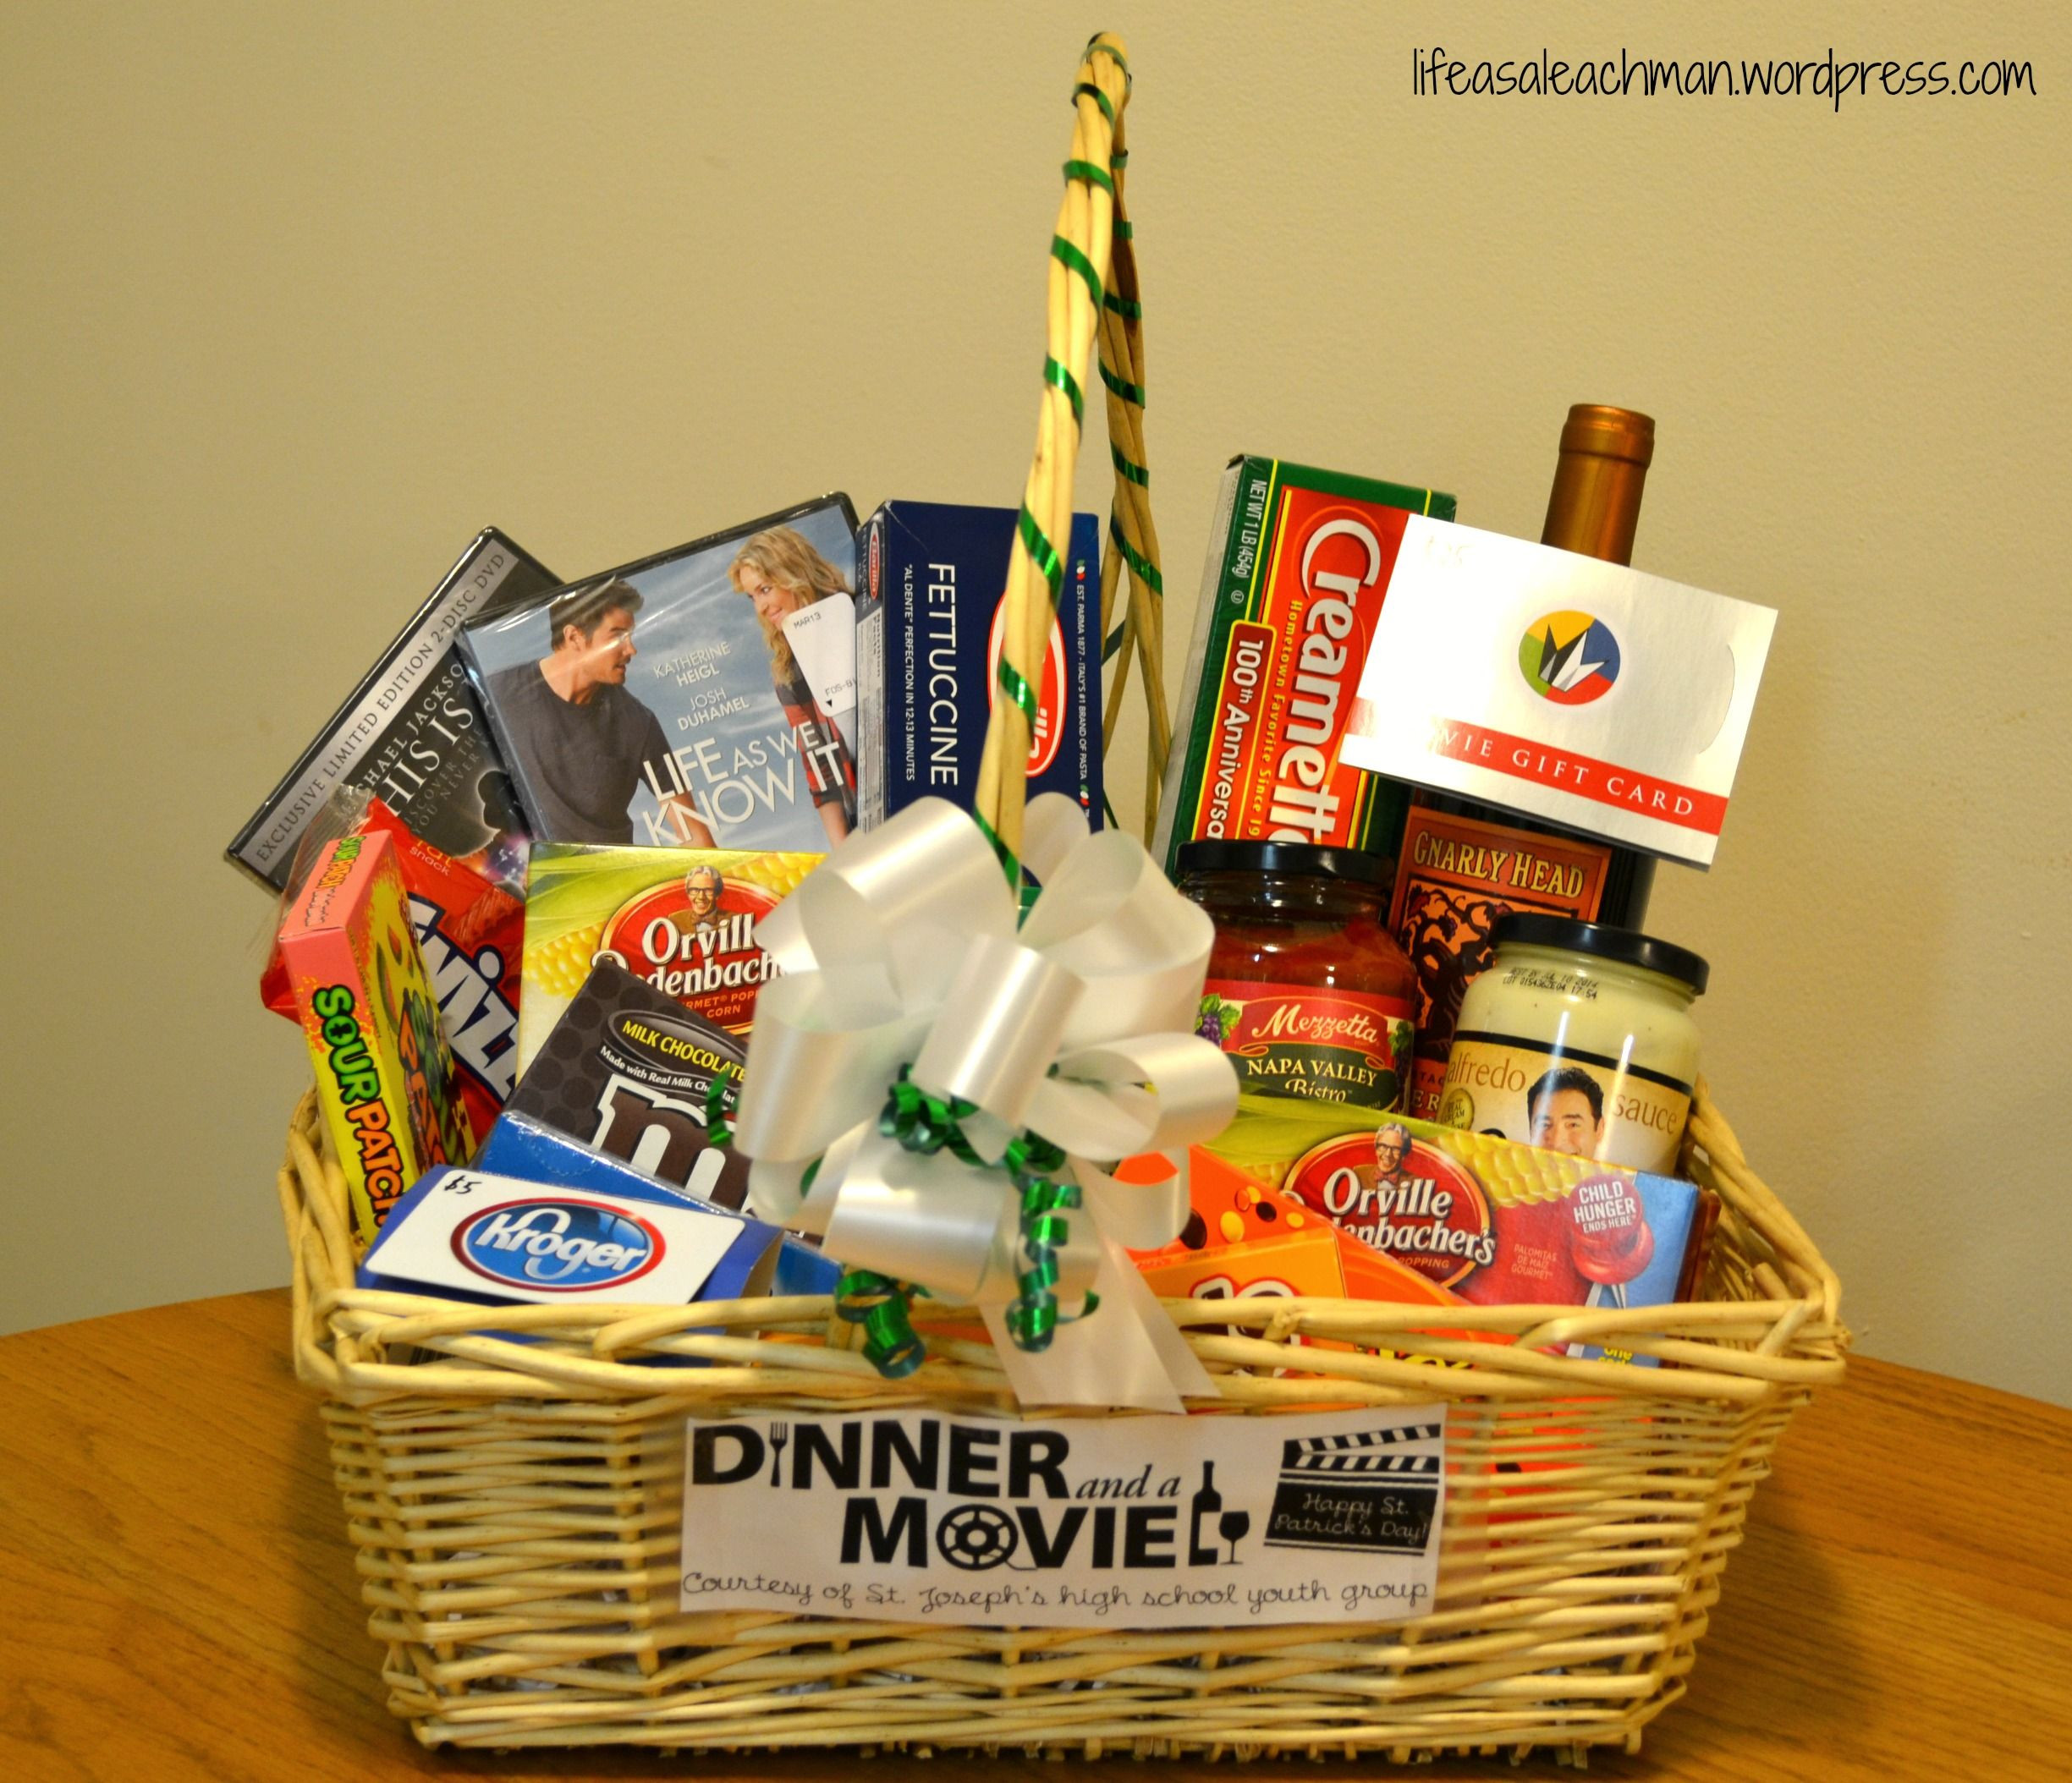 Movie Night Gift Baskets Ideas
 ‘Dinner & a Movie’ t basket Fun ideas